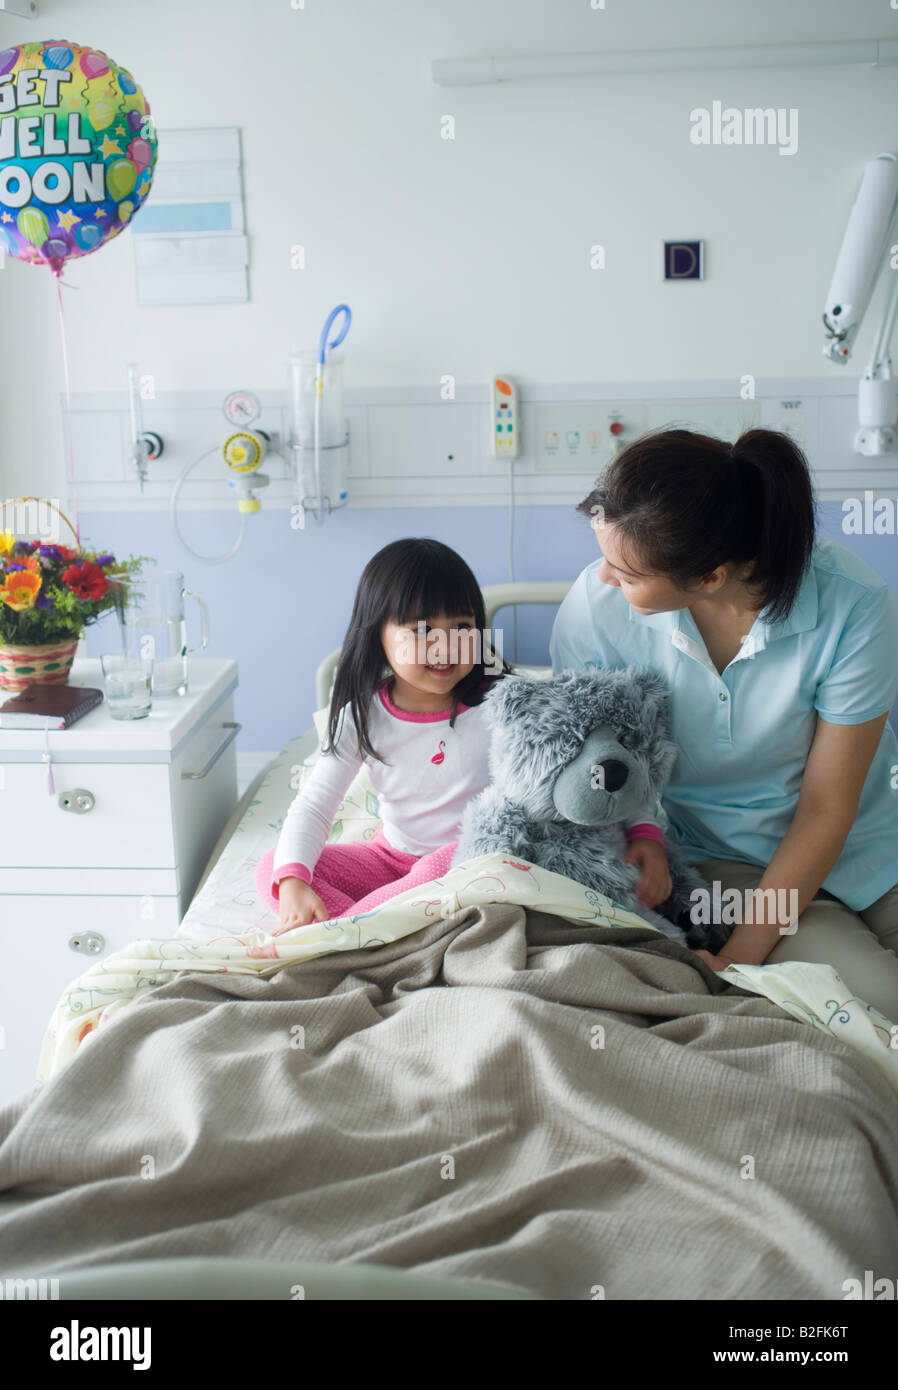 High angle view of a Mid adult woman assis sur le lit avec sa fille dans un hôpital Banque D'Images